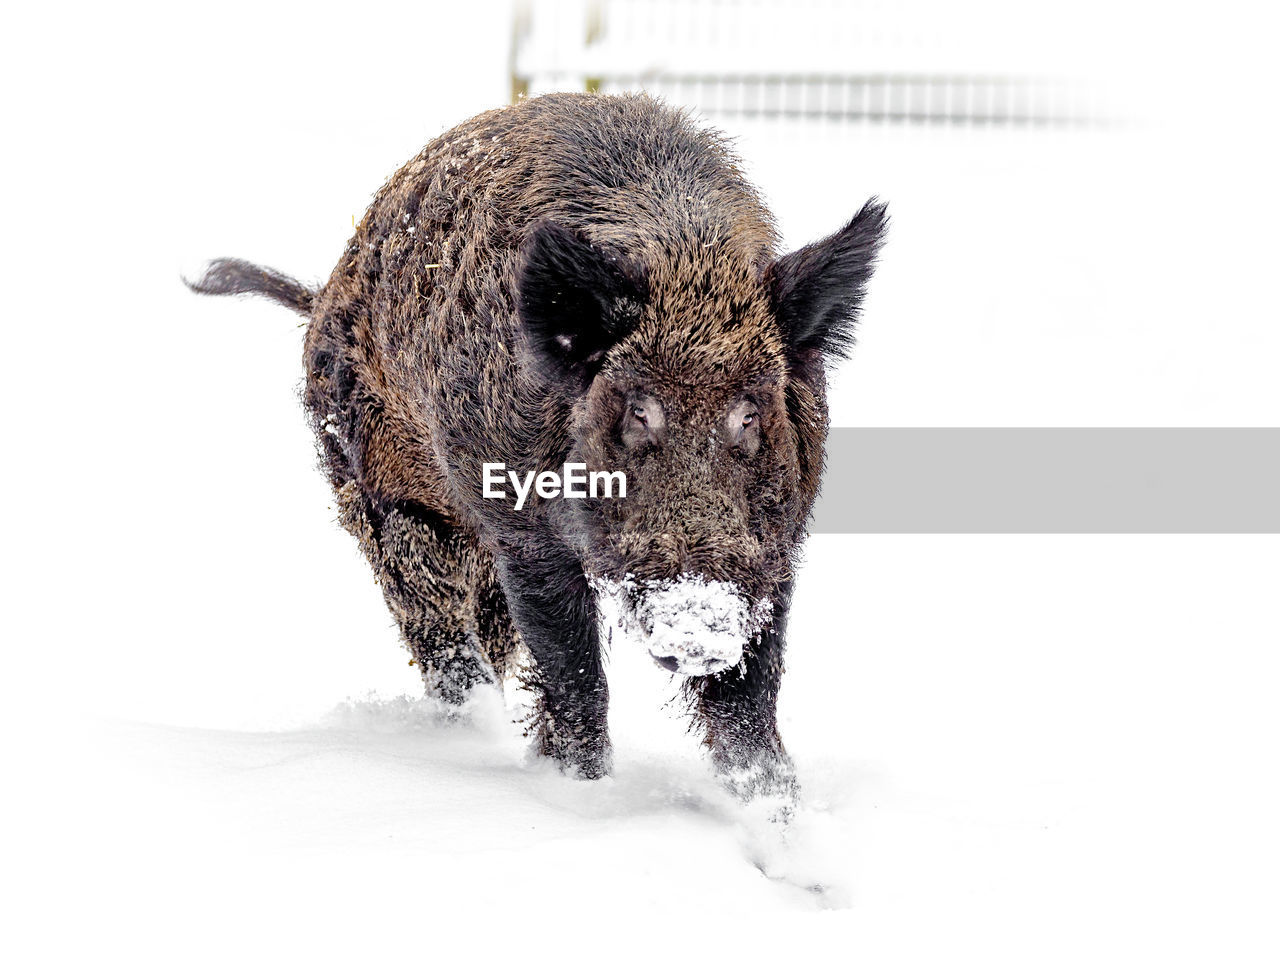 Pig walking in snow